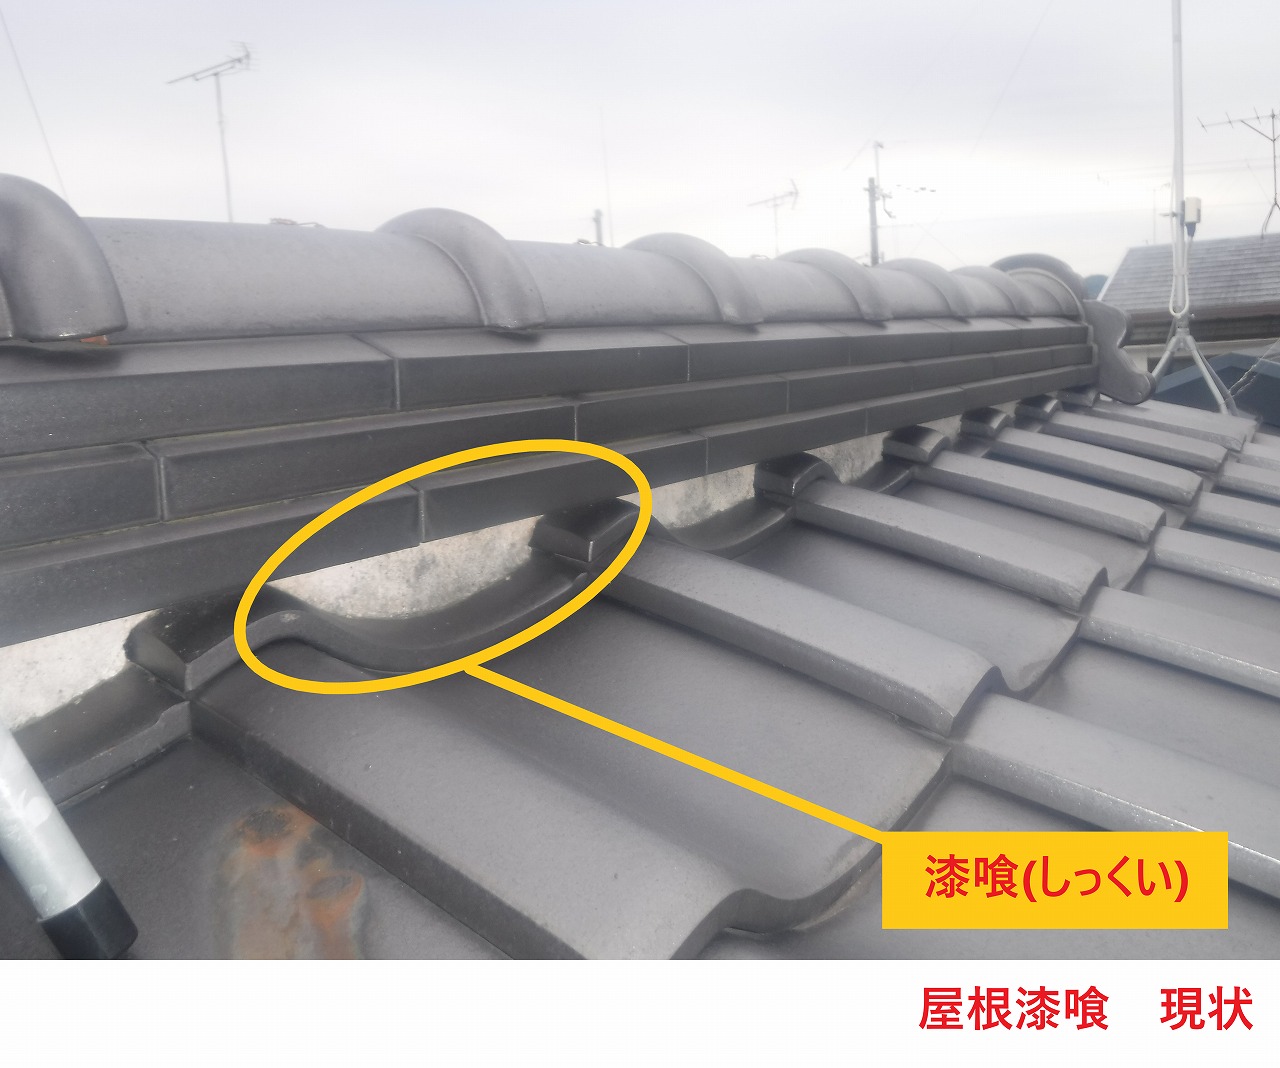 大阪府守口市藤田町で屋根工事漆喰工事詰め直し下屋根カバー工法を施工しました